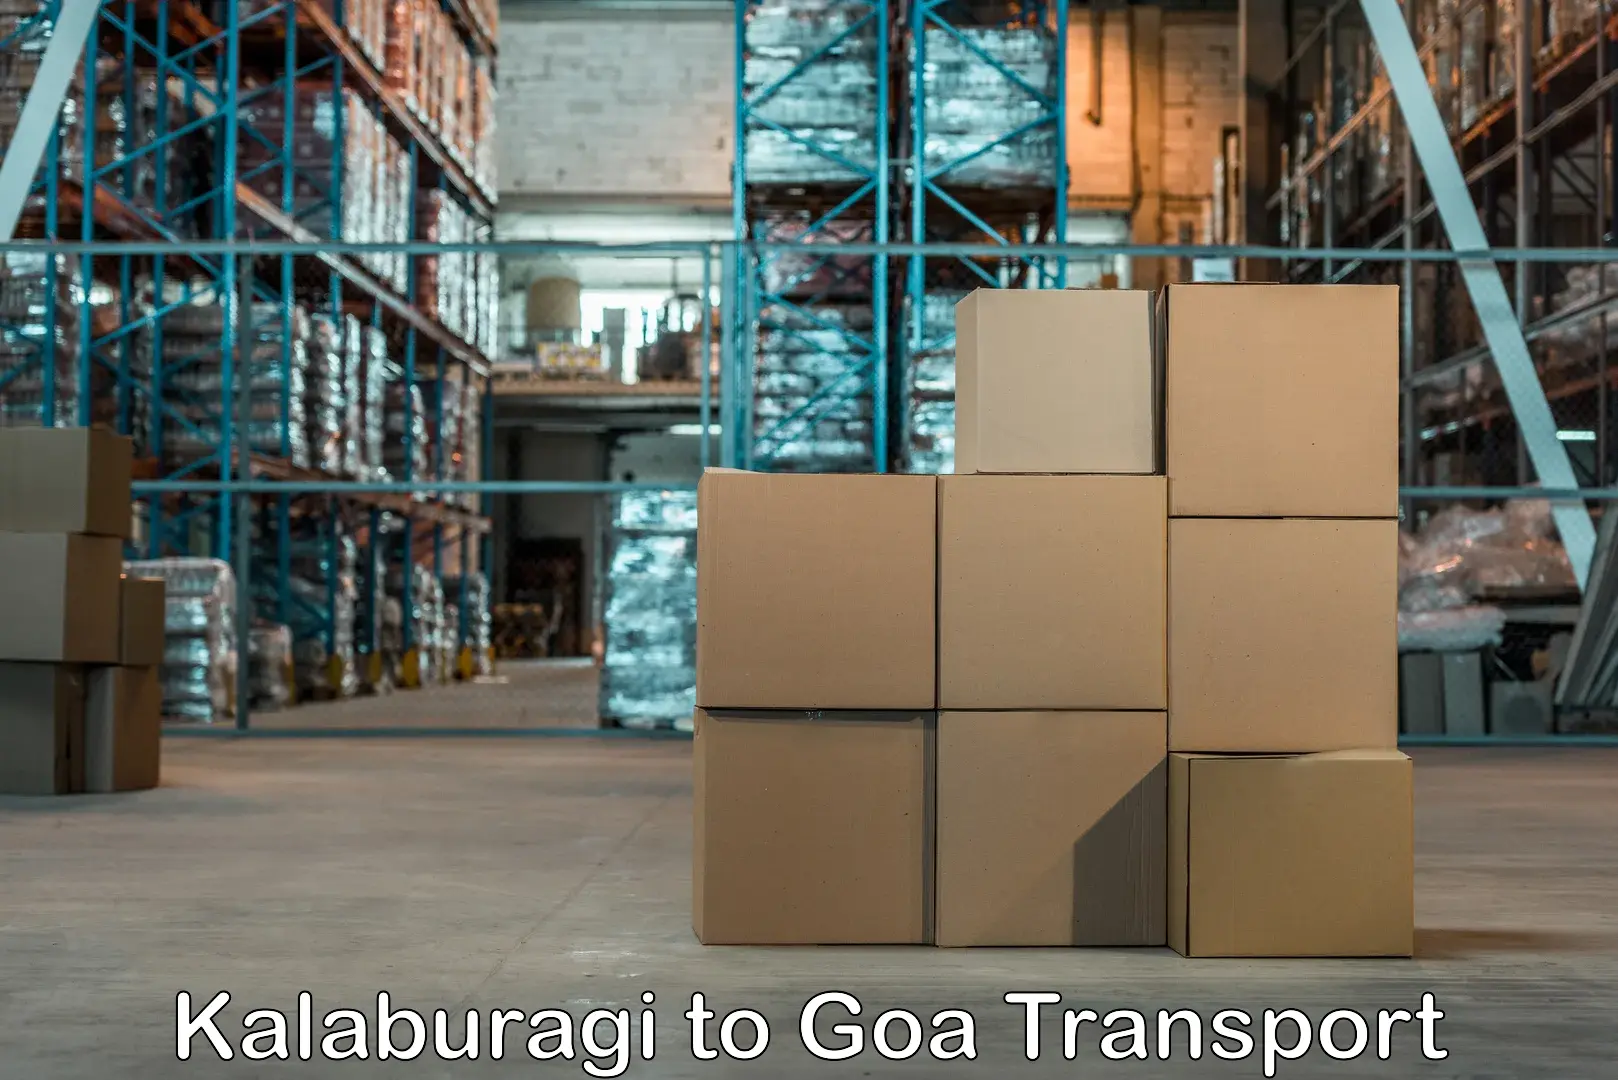 Transport in sharing Kalaburagi to Vasco da Gama